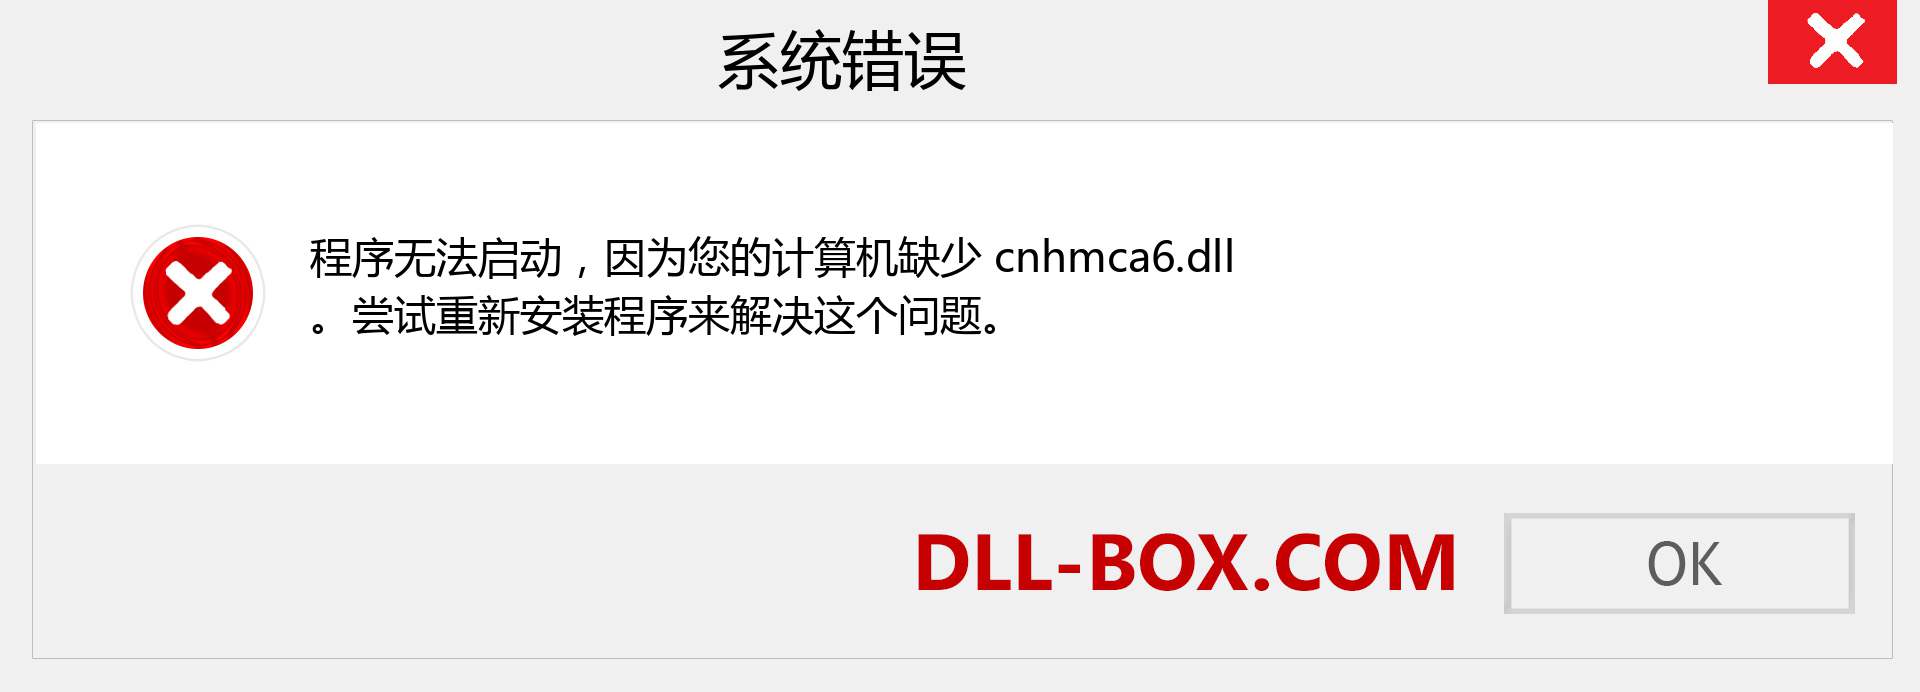 cnhmca6.dll 文件丢失？。 适用于 Windows 7、8、10 的下载 - 修复 Windows、照片、图像上的 cnhmca6 dll 丢失错误